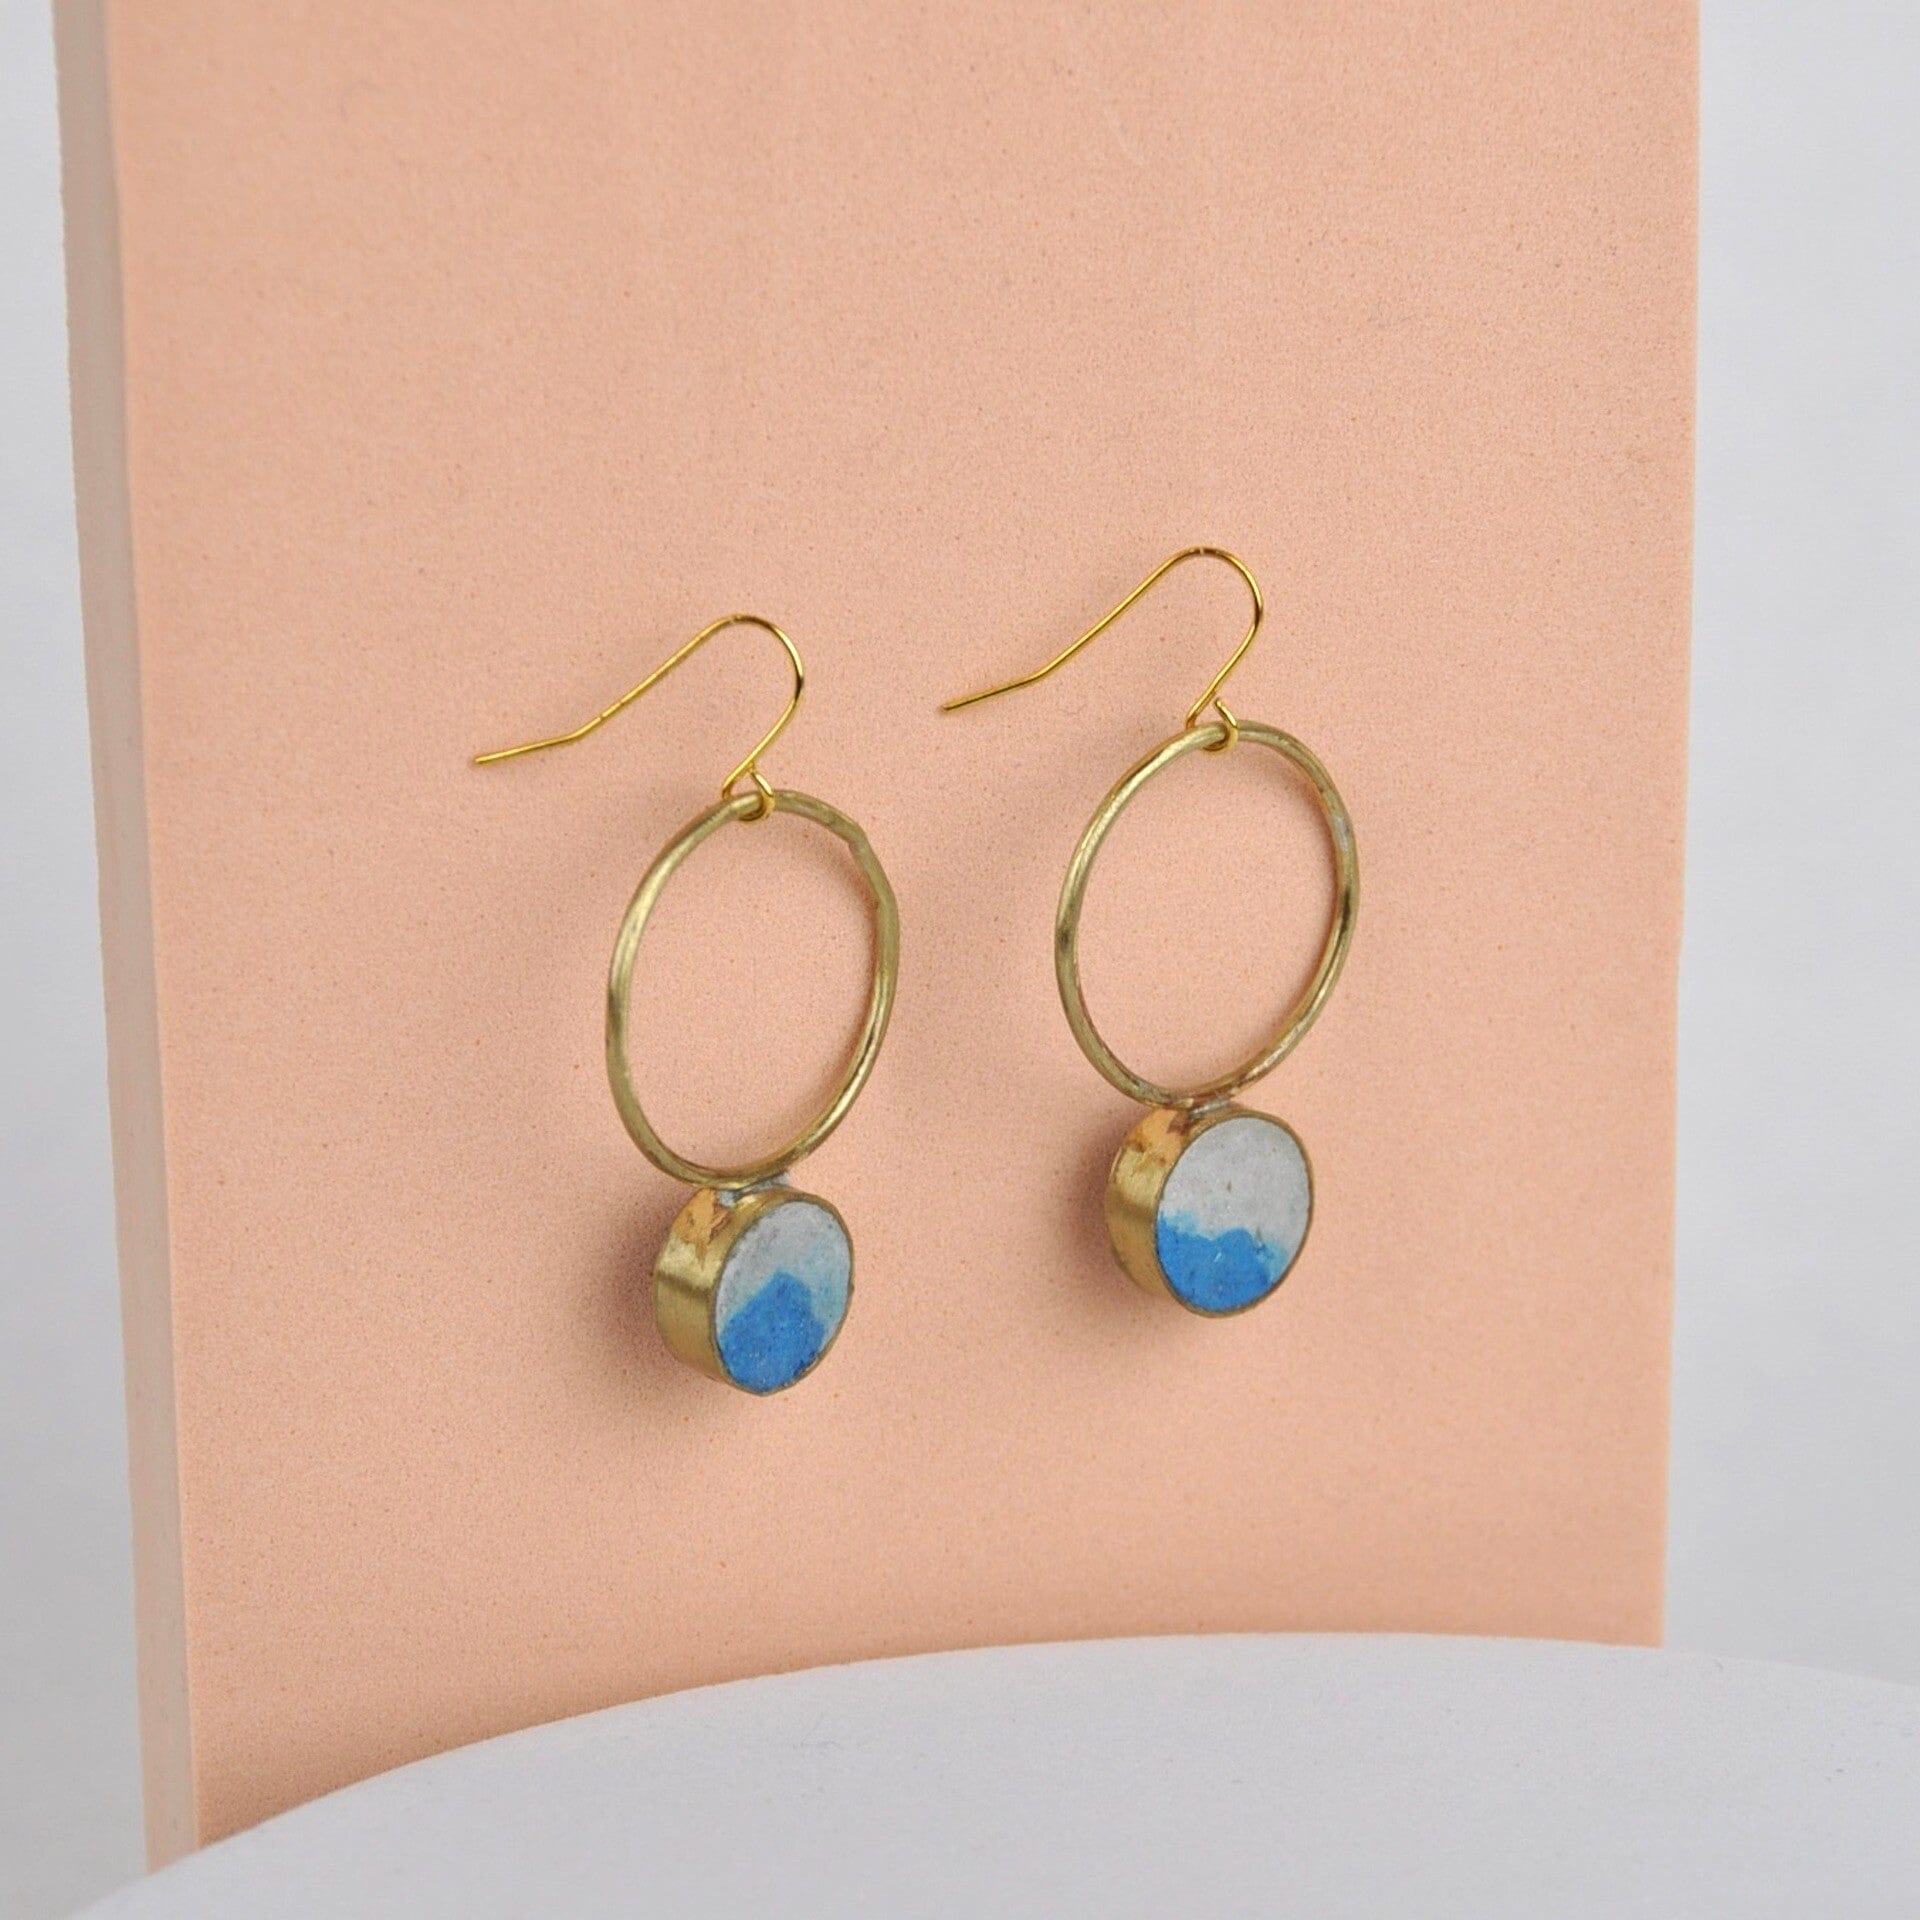 Quazi Design Lapis Lazuli Circle Earrings - Blue & Stone